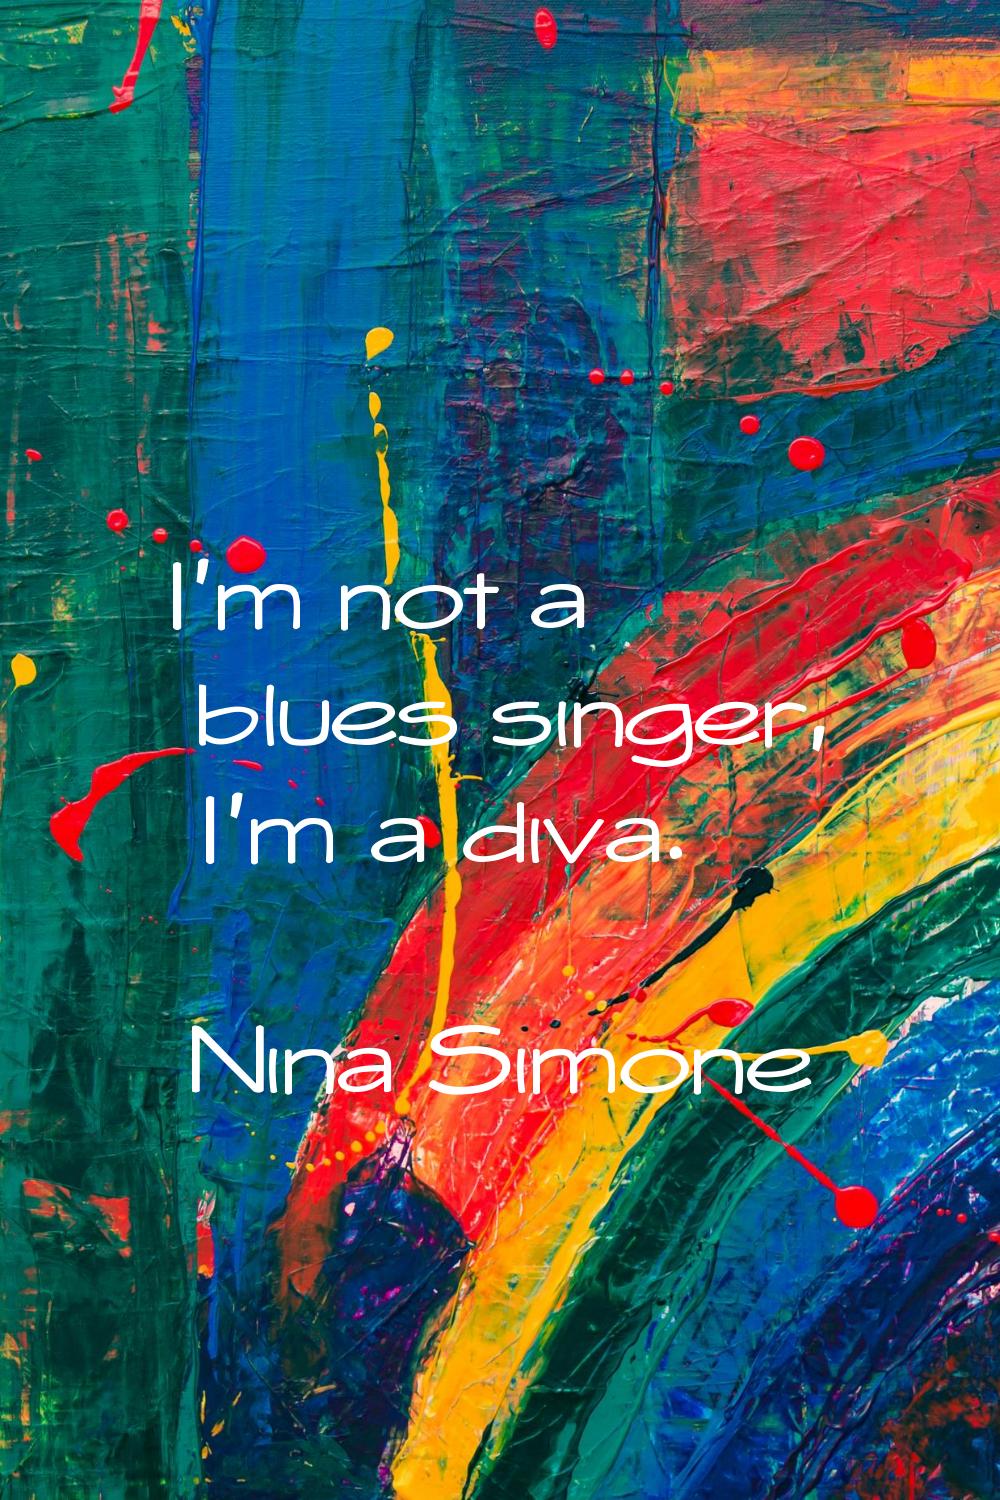 I'm not a blues singer, I'm a diva.